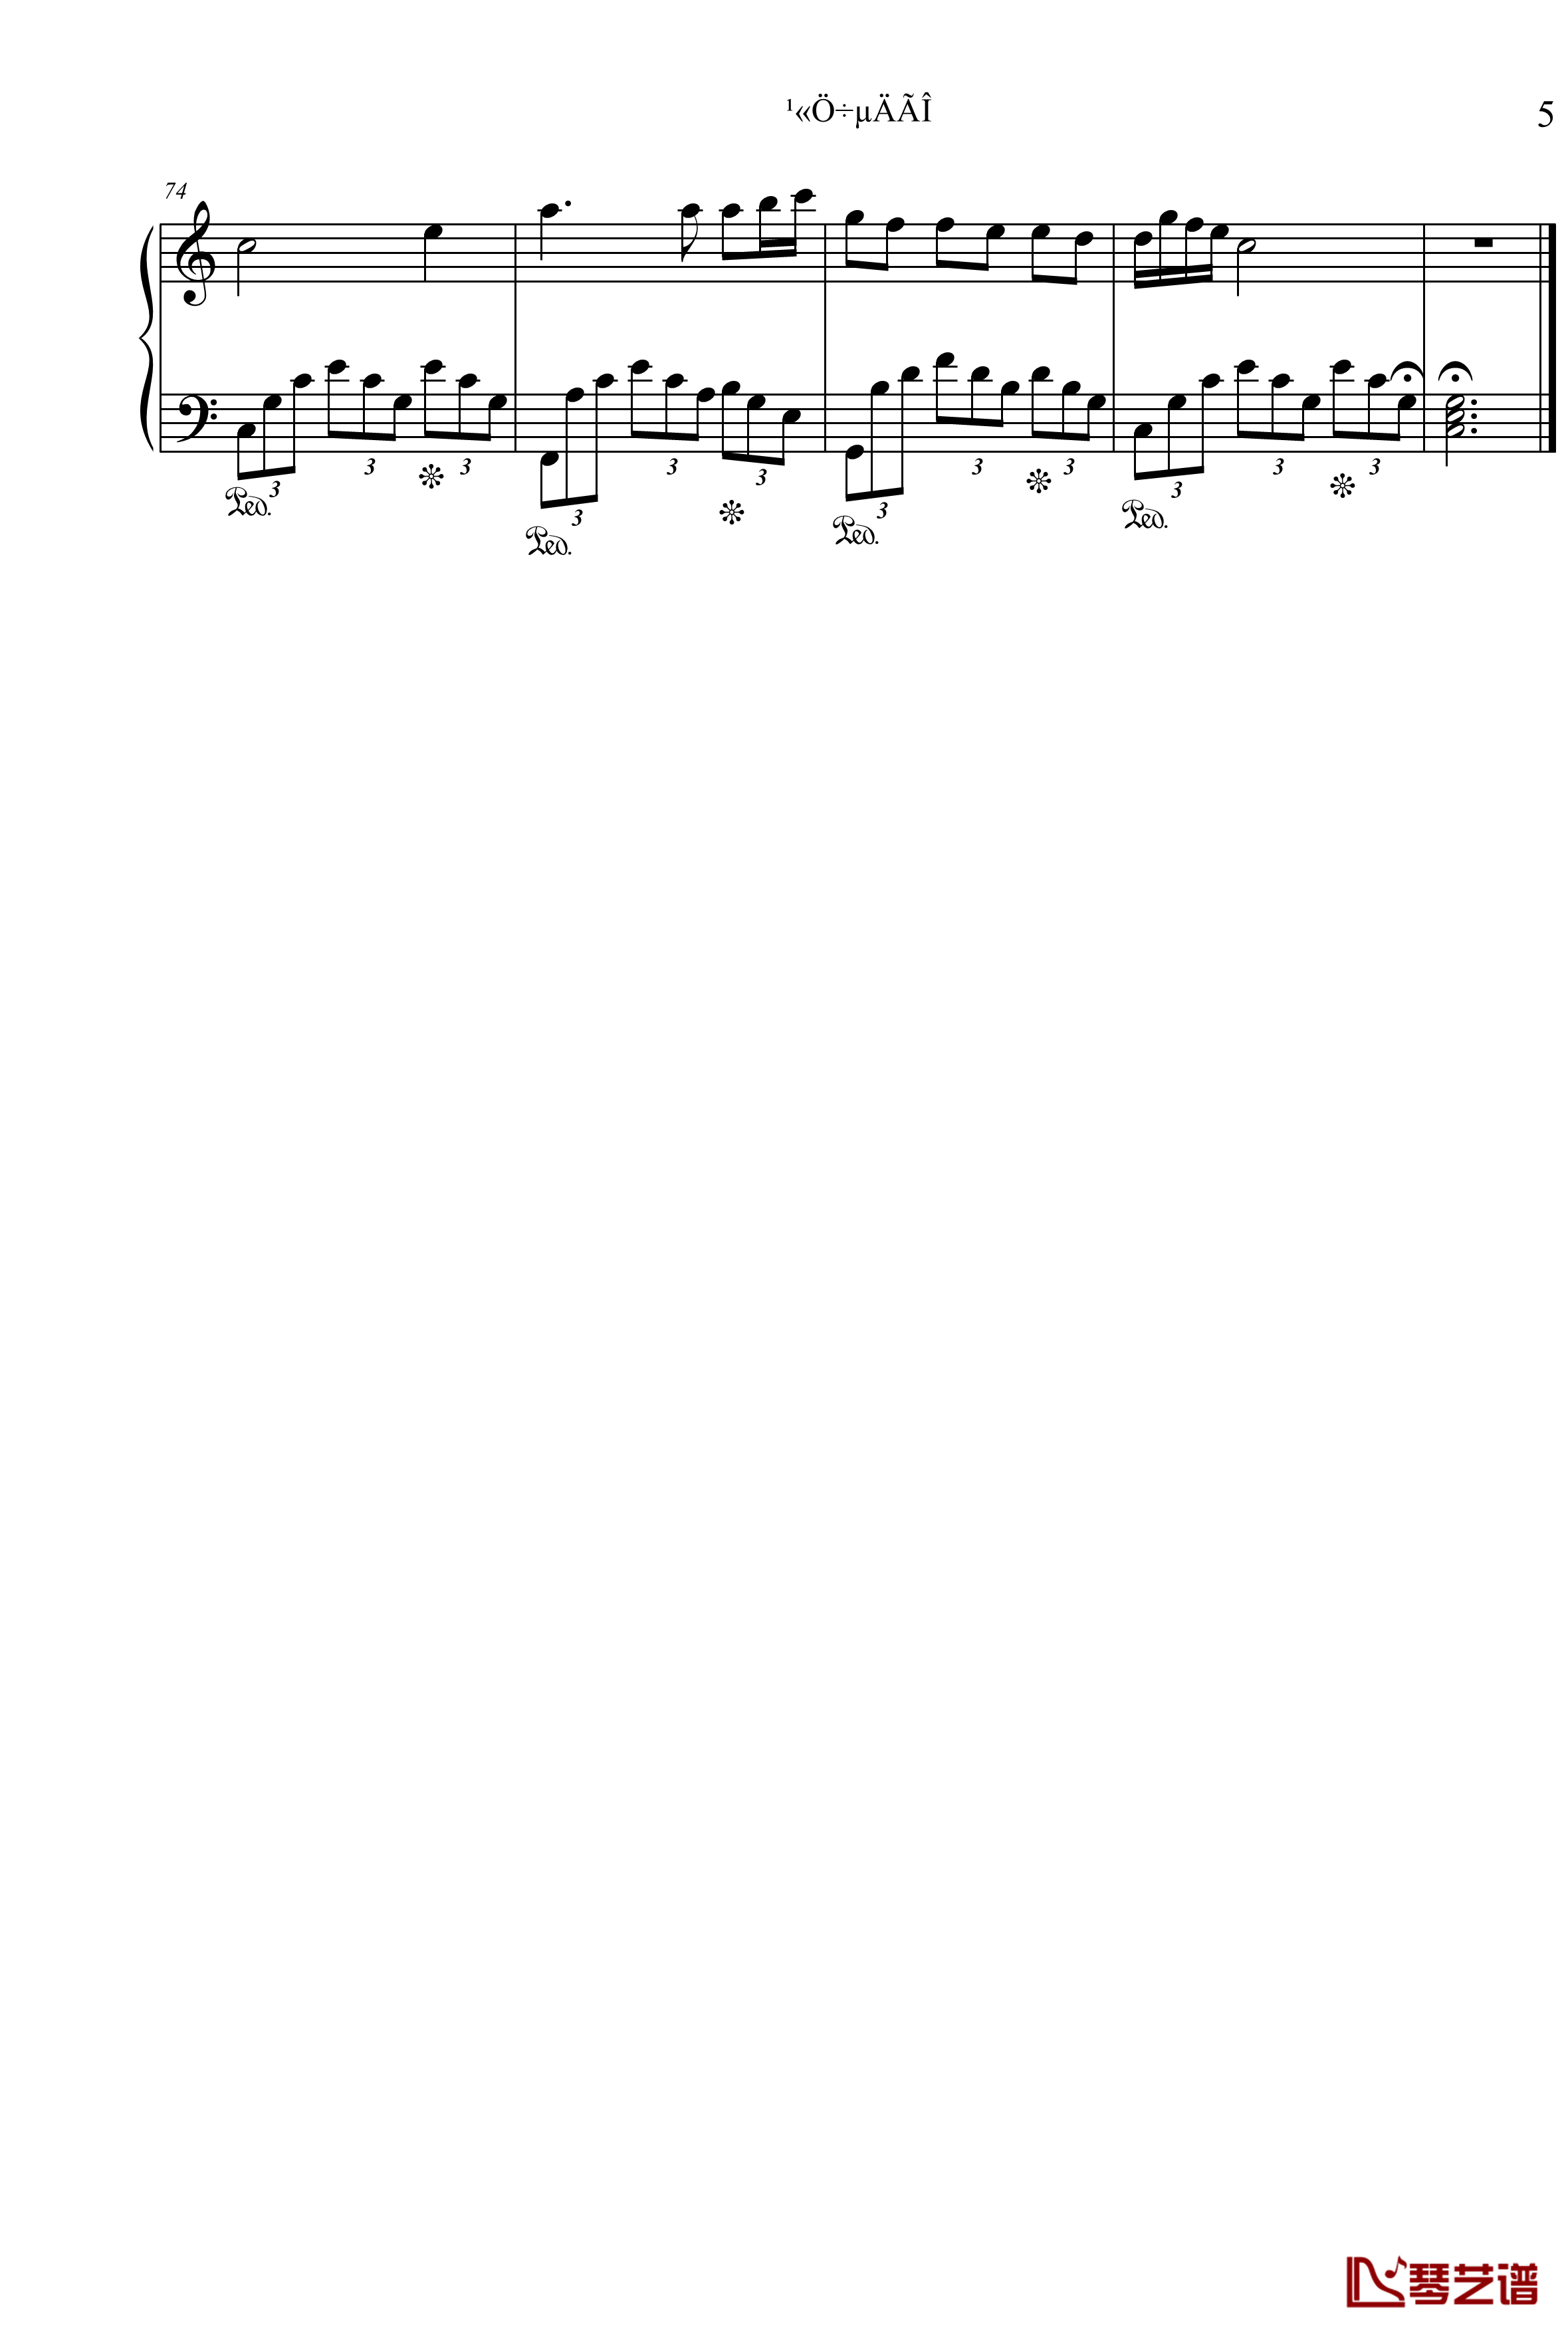 公主奏鸣曲第二章钢琴谱-公主的梦-项海波5